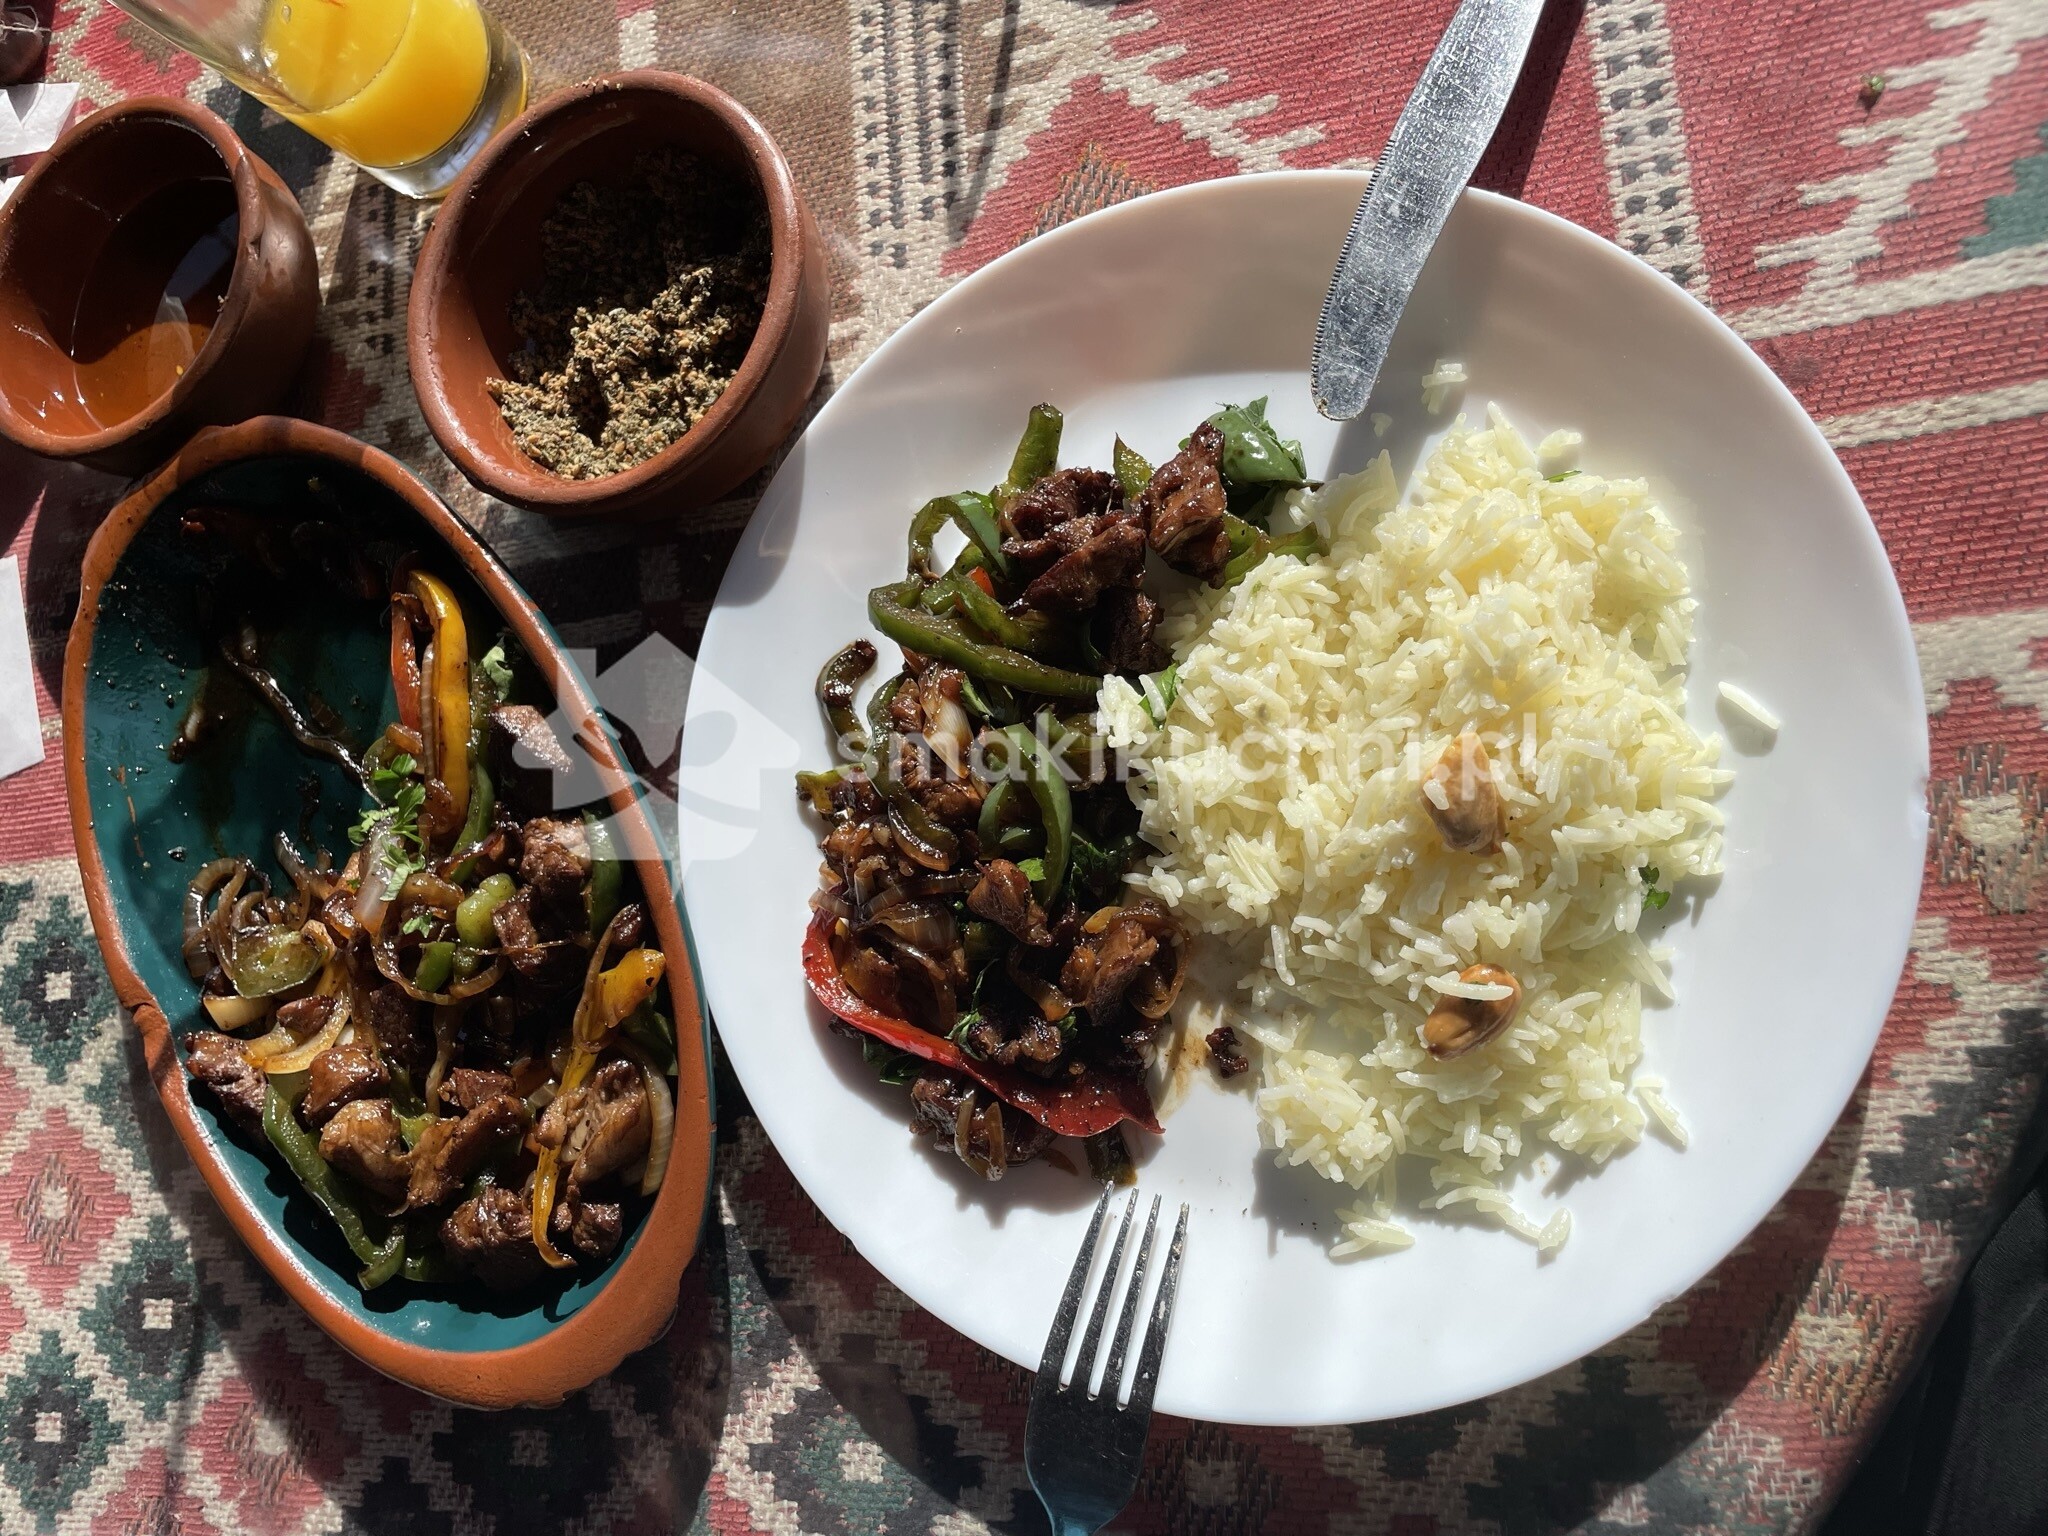 Lamb safieh (sagieh) typowa jordańska potrawa: jagnięcina z chili, cebulą, papryką i ryżem